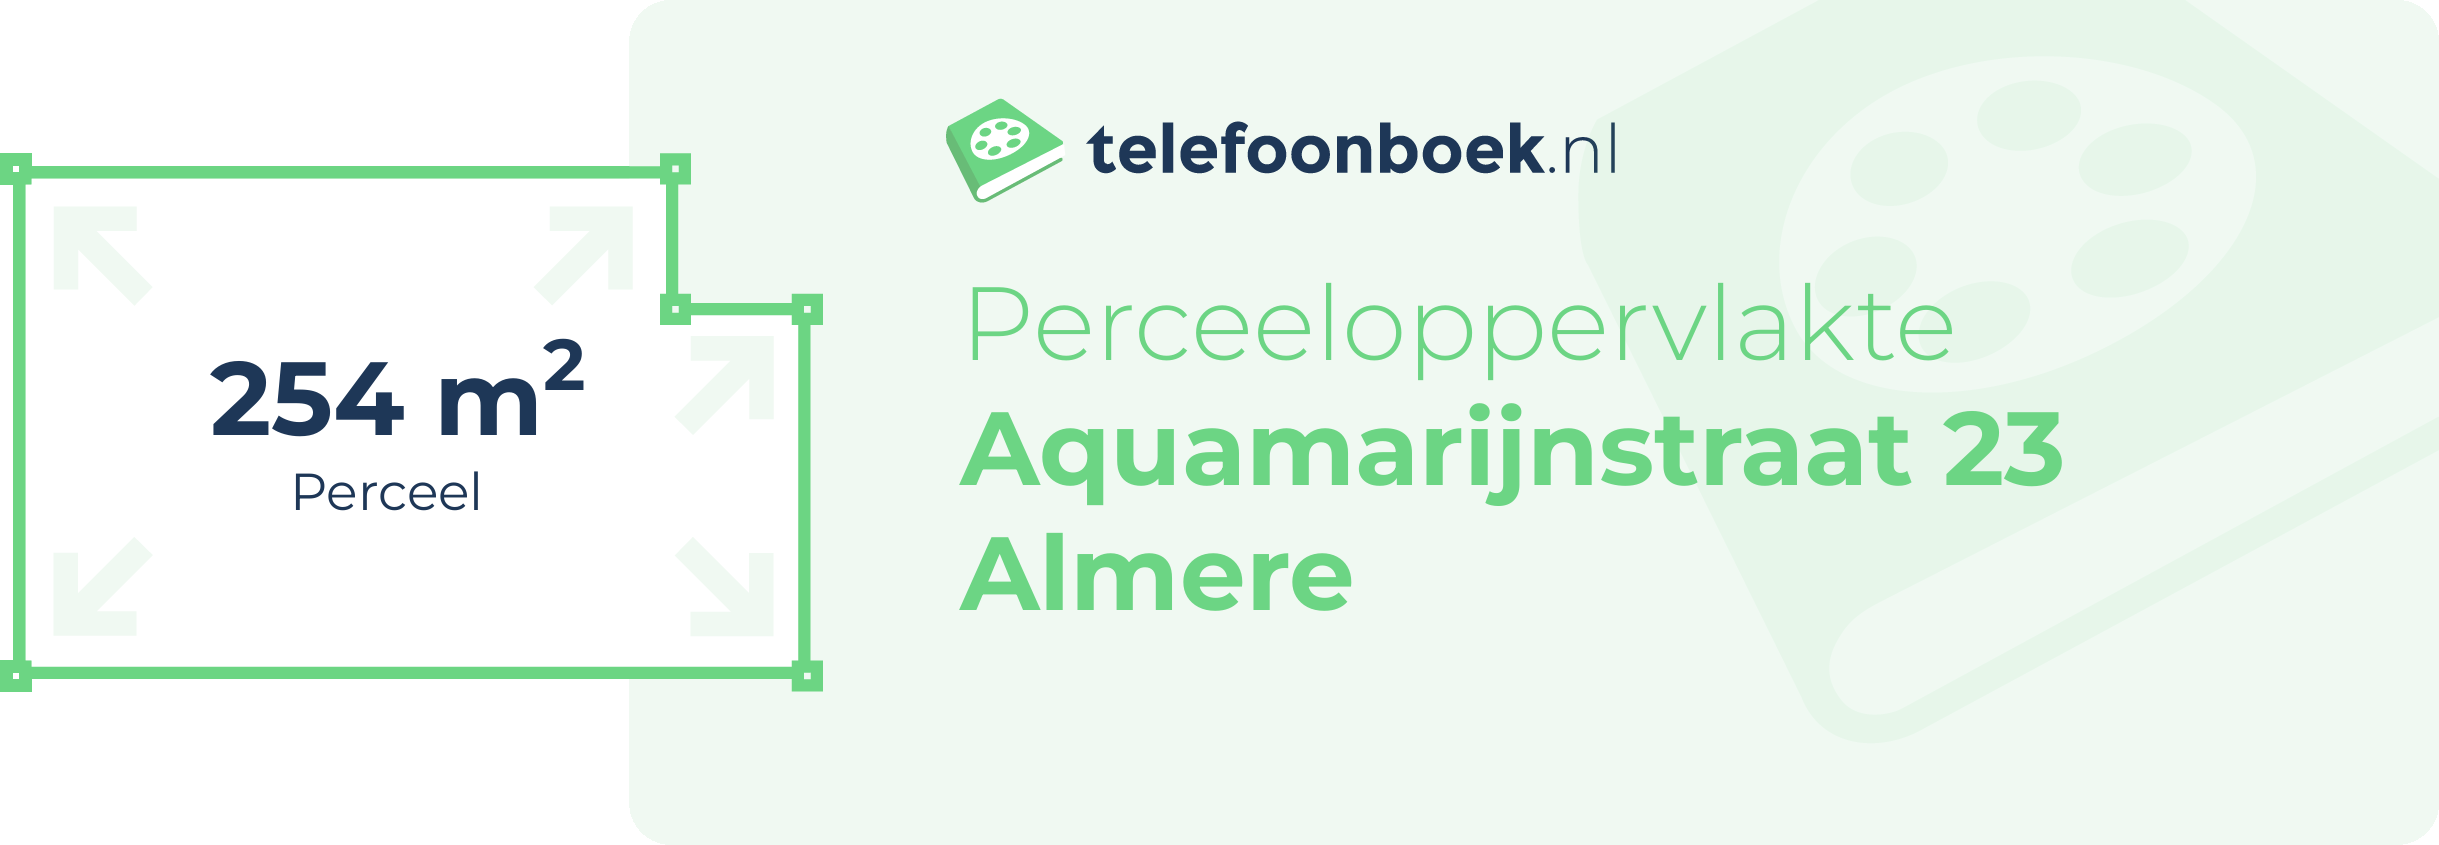 Perceeloppervlakte Aquamarijnstraat 23 Almere